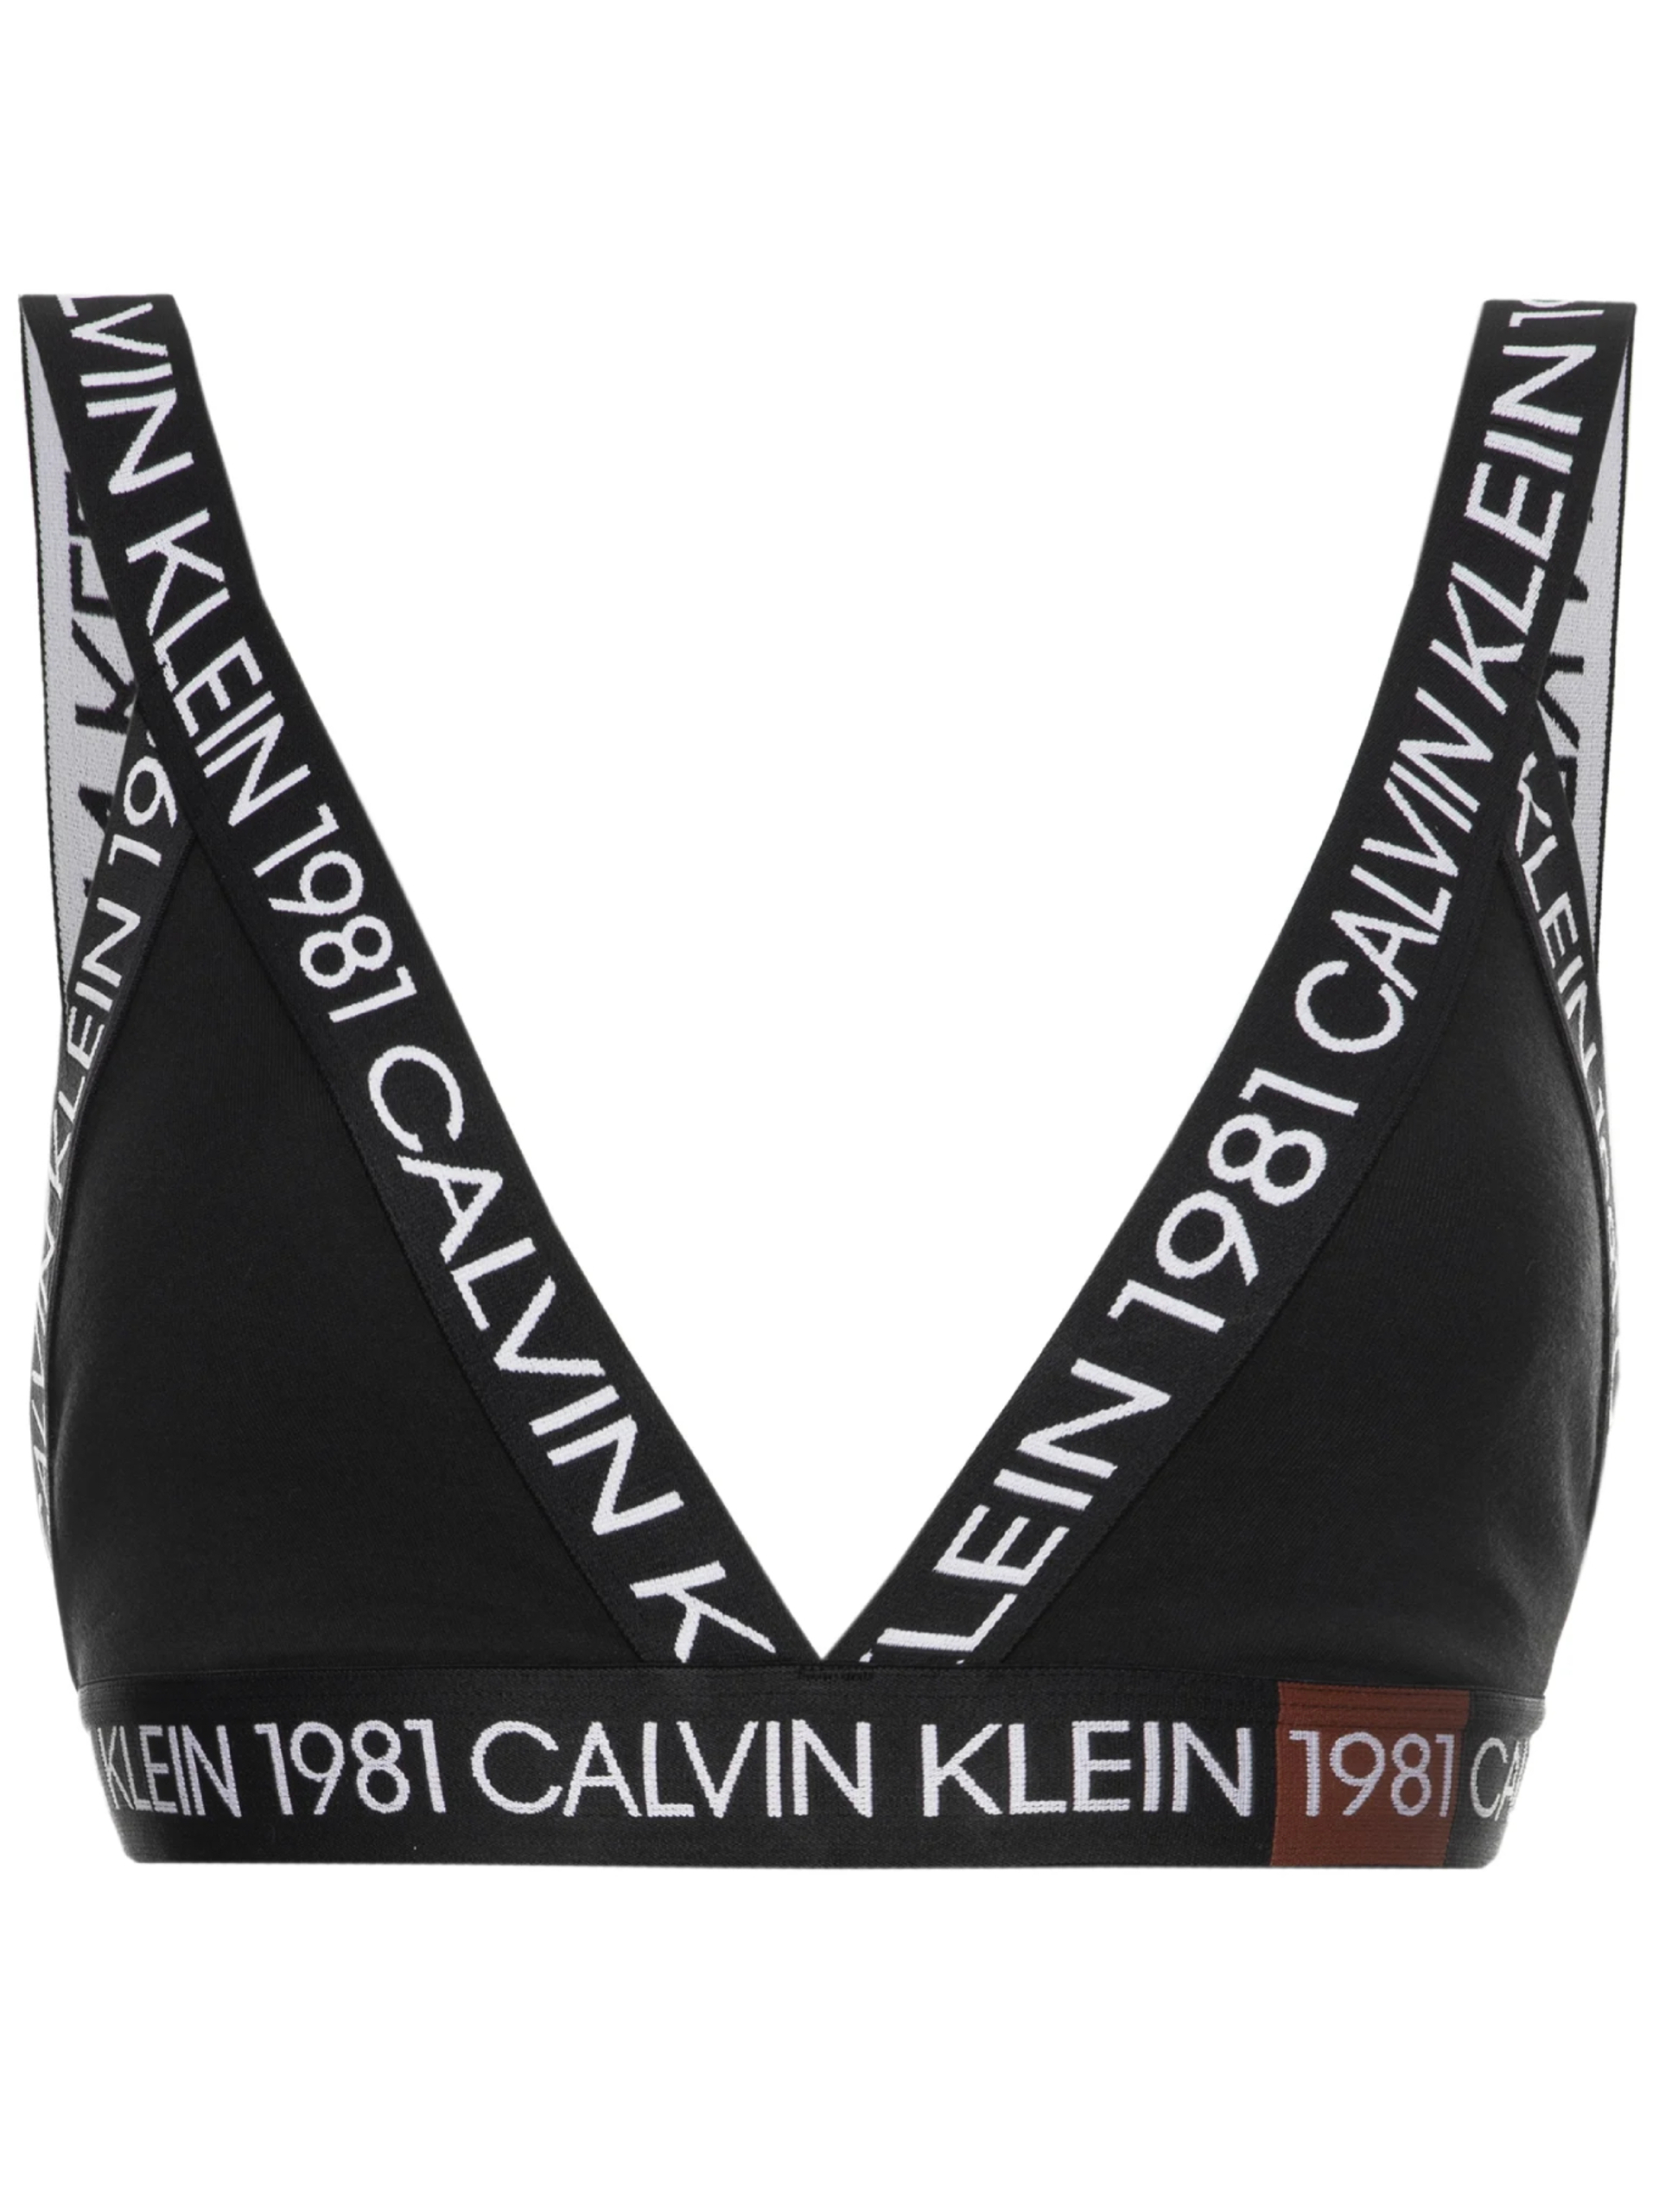 Calvin Klein dámská černá sportovní podprsenka